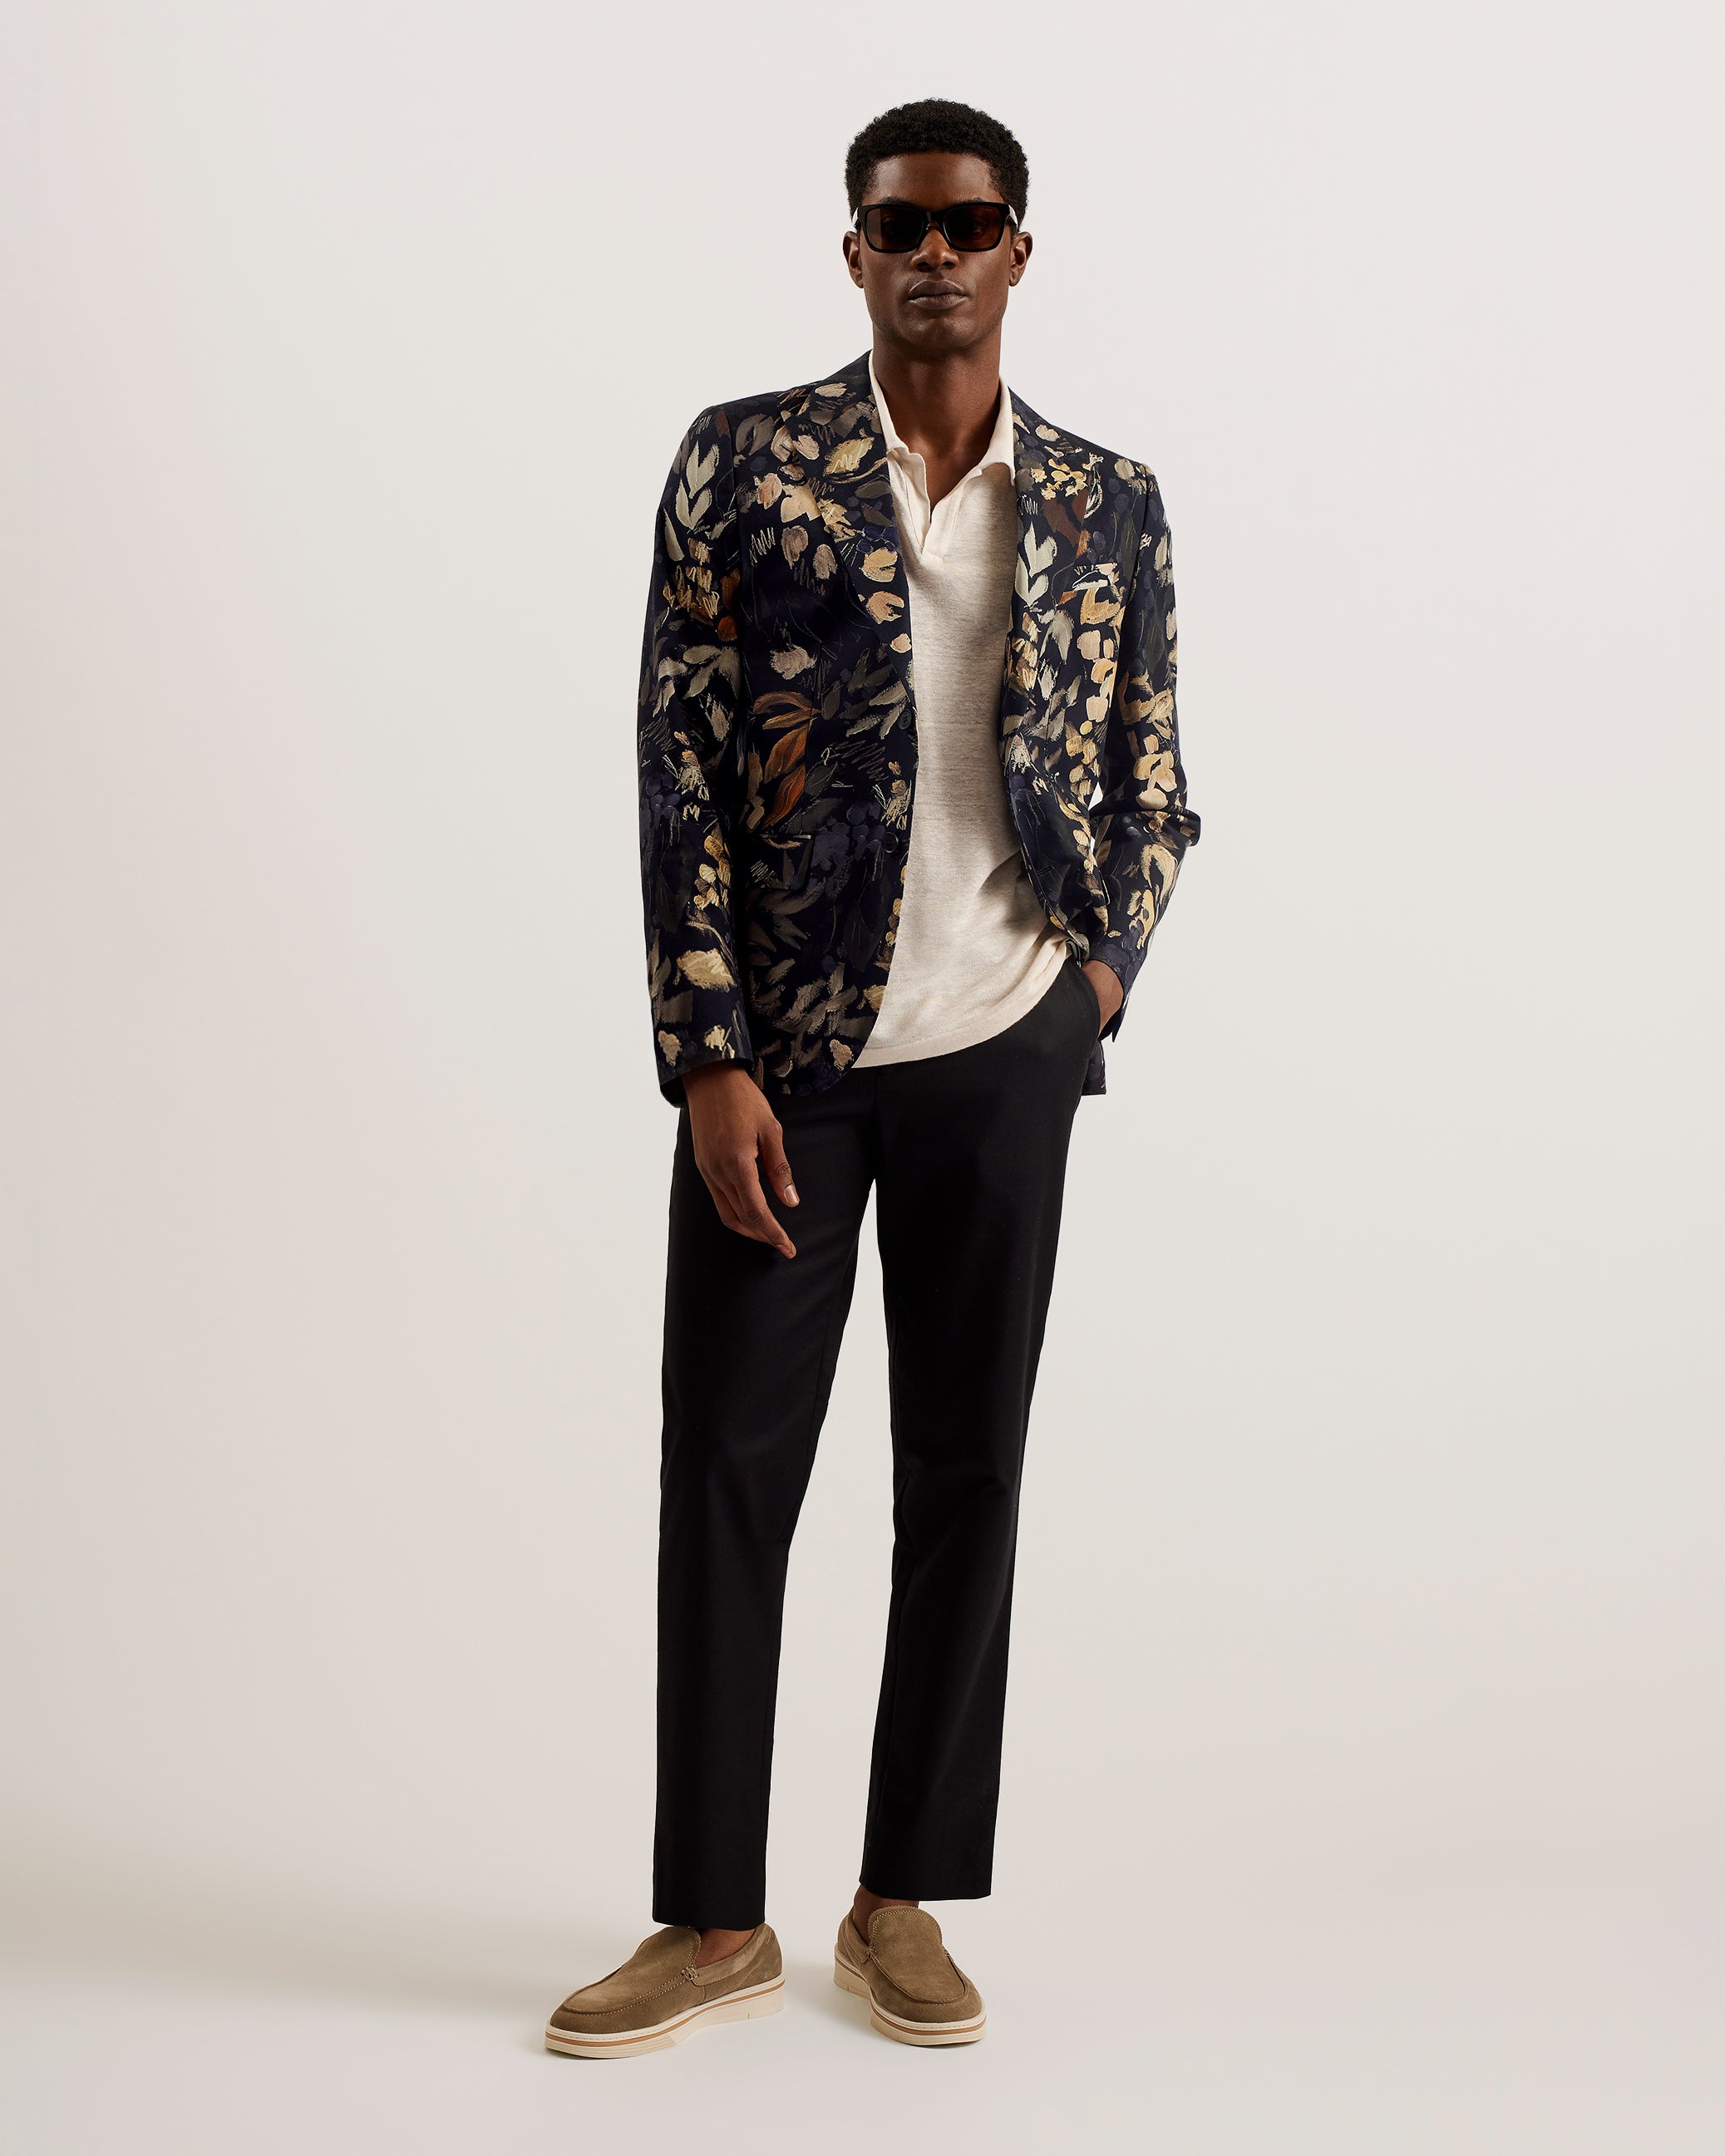 Blazers for Men - Buy Men's Suits & Blazer Online in Canada